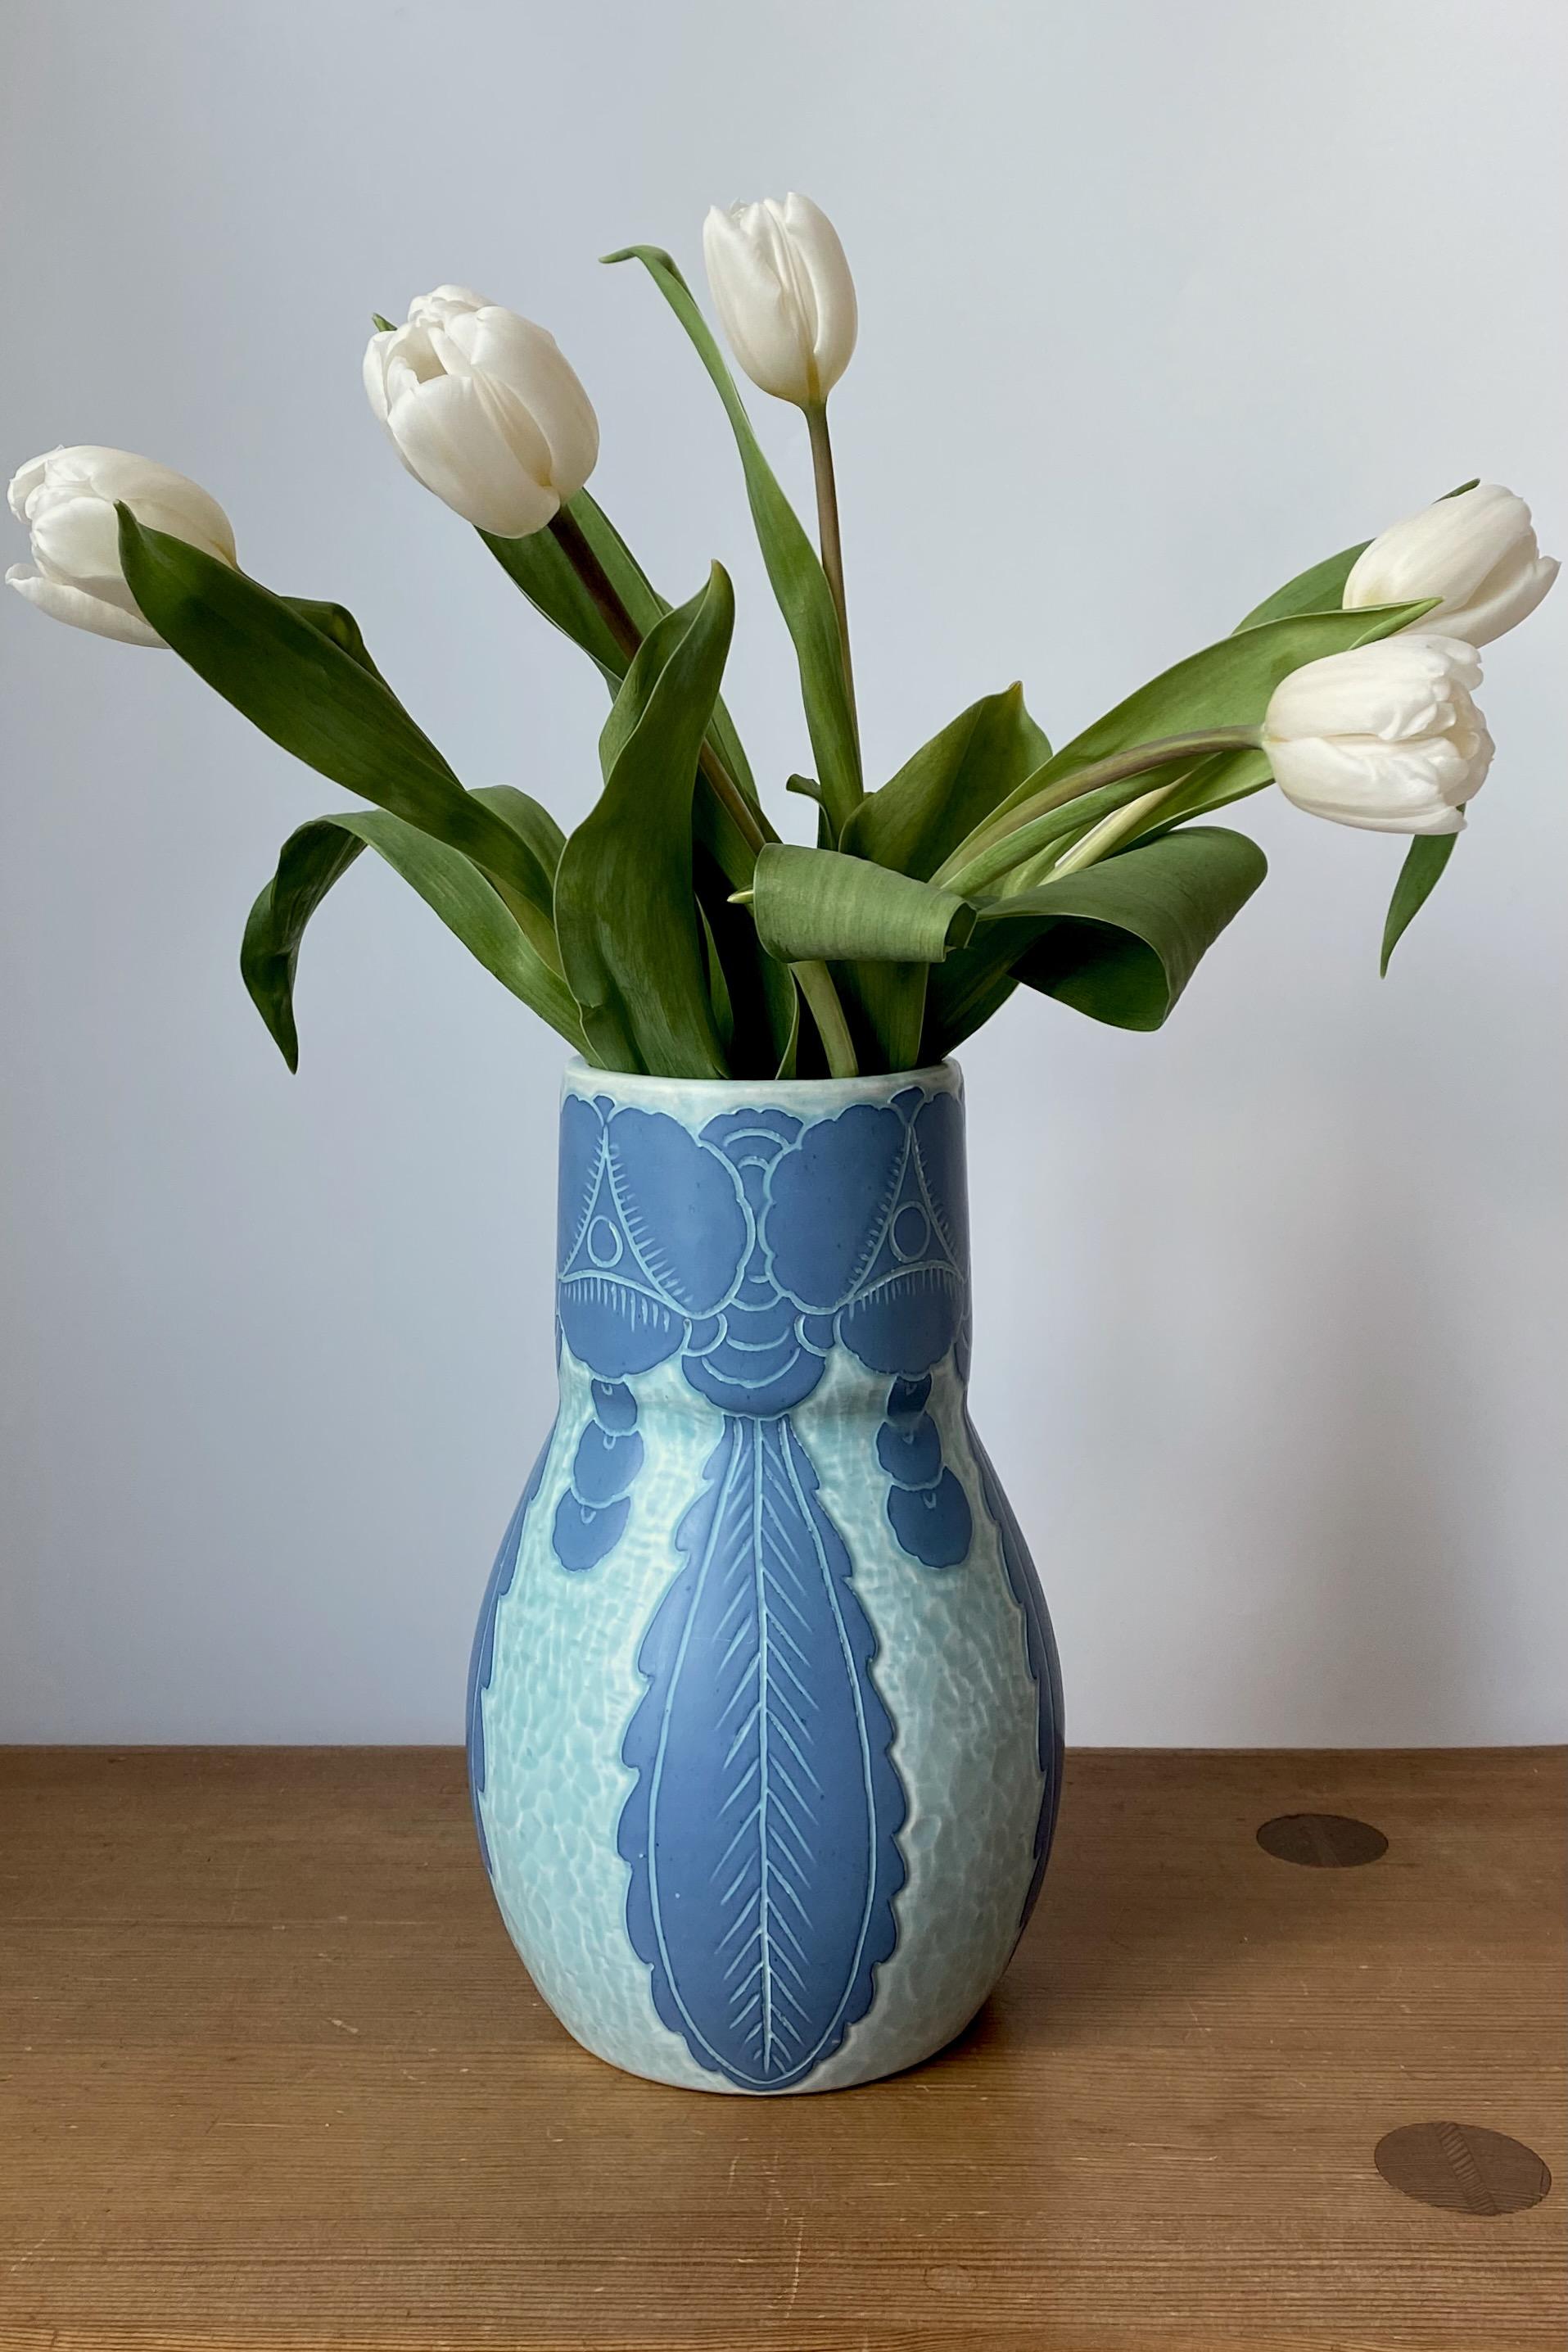 Wunderschöne Sgraffito-Vase aus dem Jahr 1922 von Josef Ekberg für Gustavsberg, Schweden. Ein Blumenmotiv im Stil der schwedischen Jugend schmückt die Vase in blauen Farbtönen. Josef Ekberg war ein schwedischer Keramikkünstler, der zwischen 1889 und